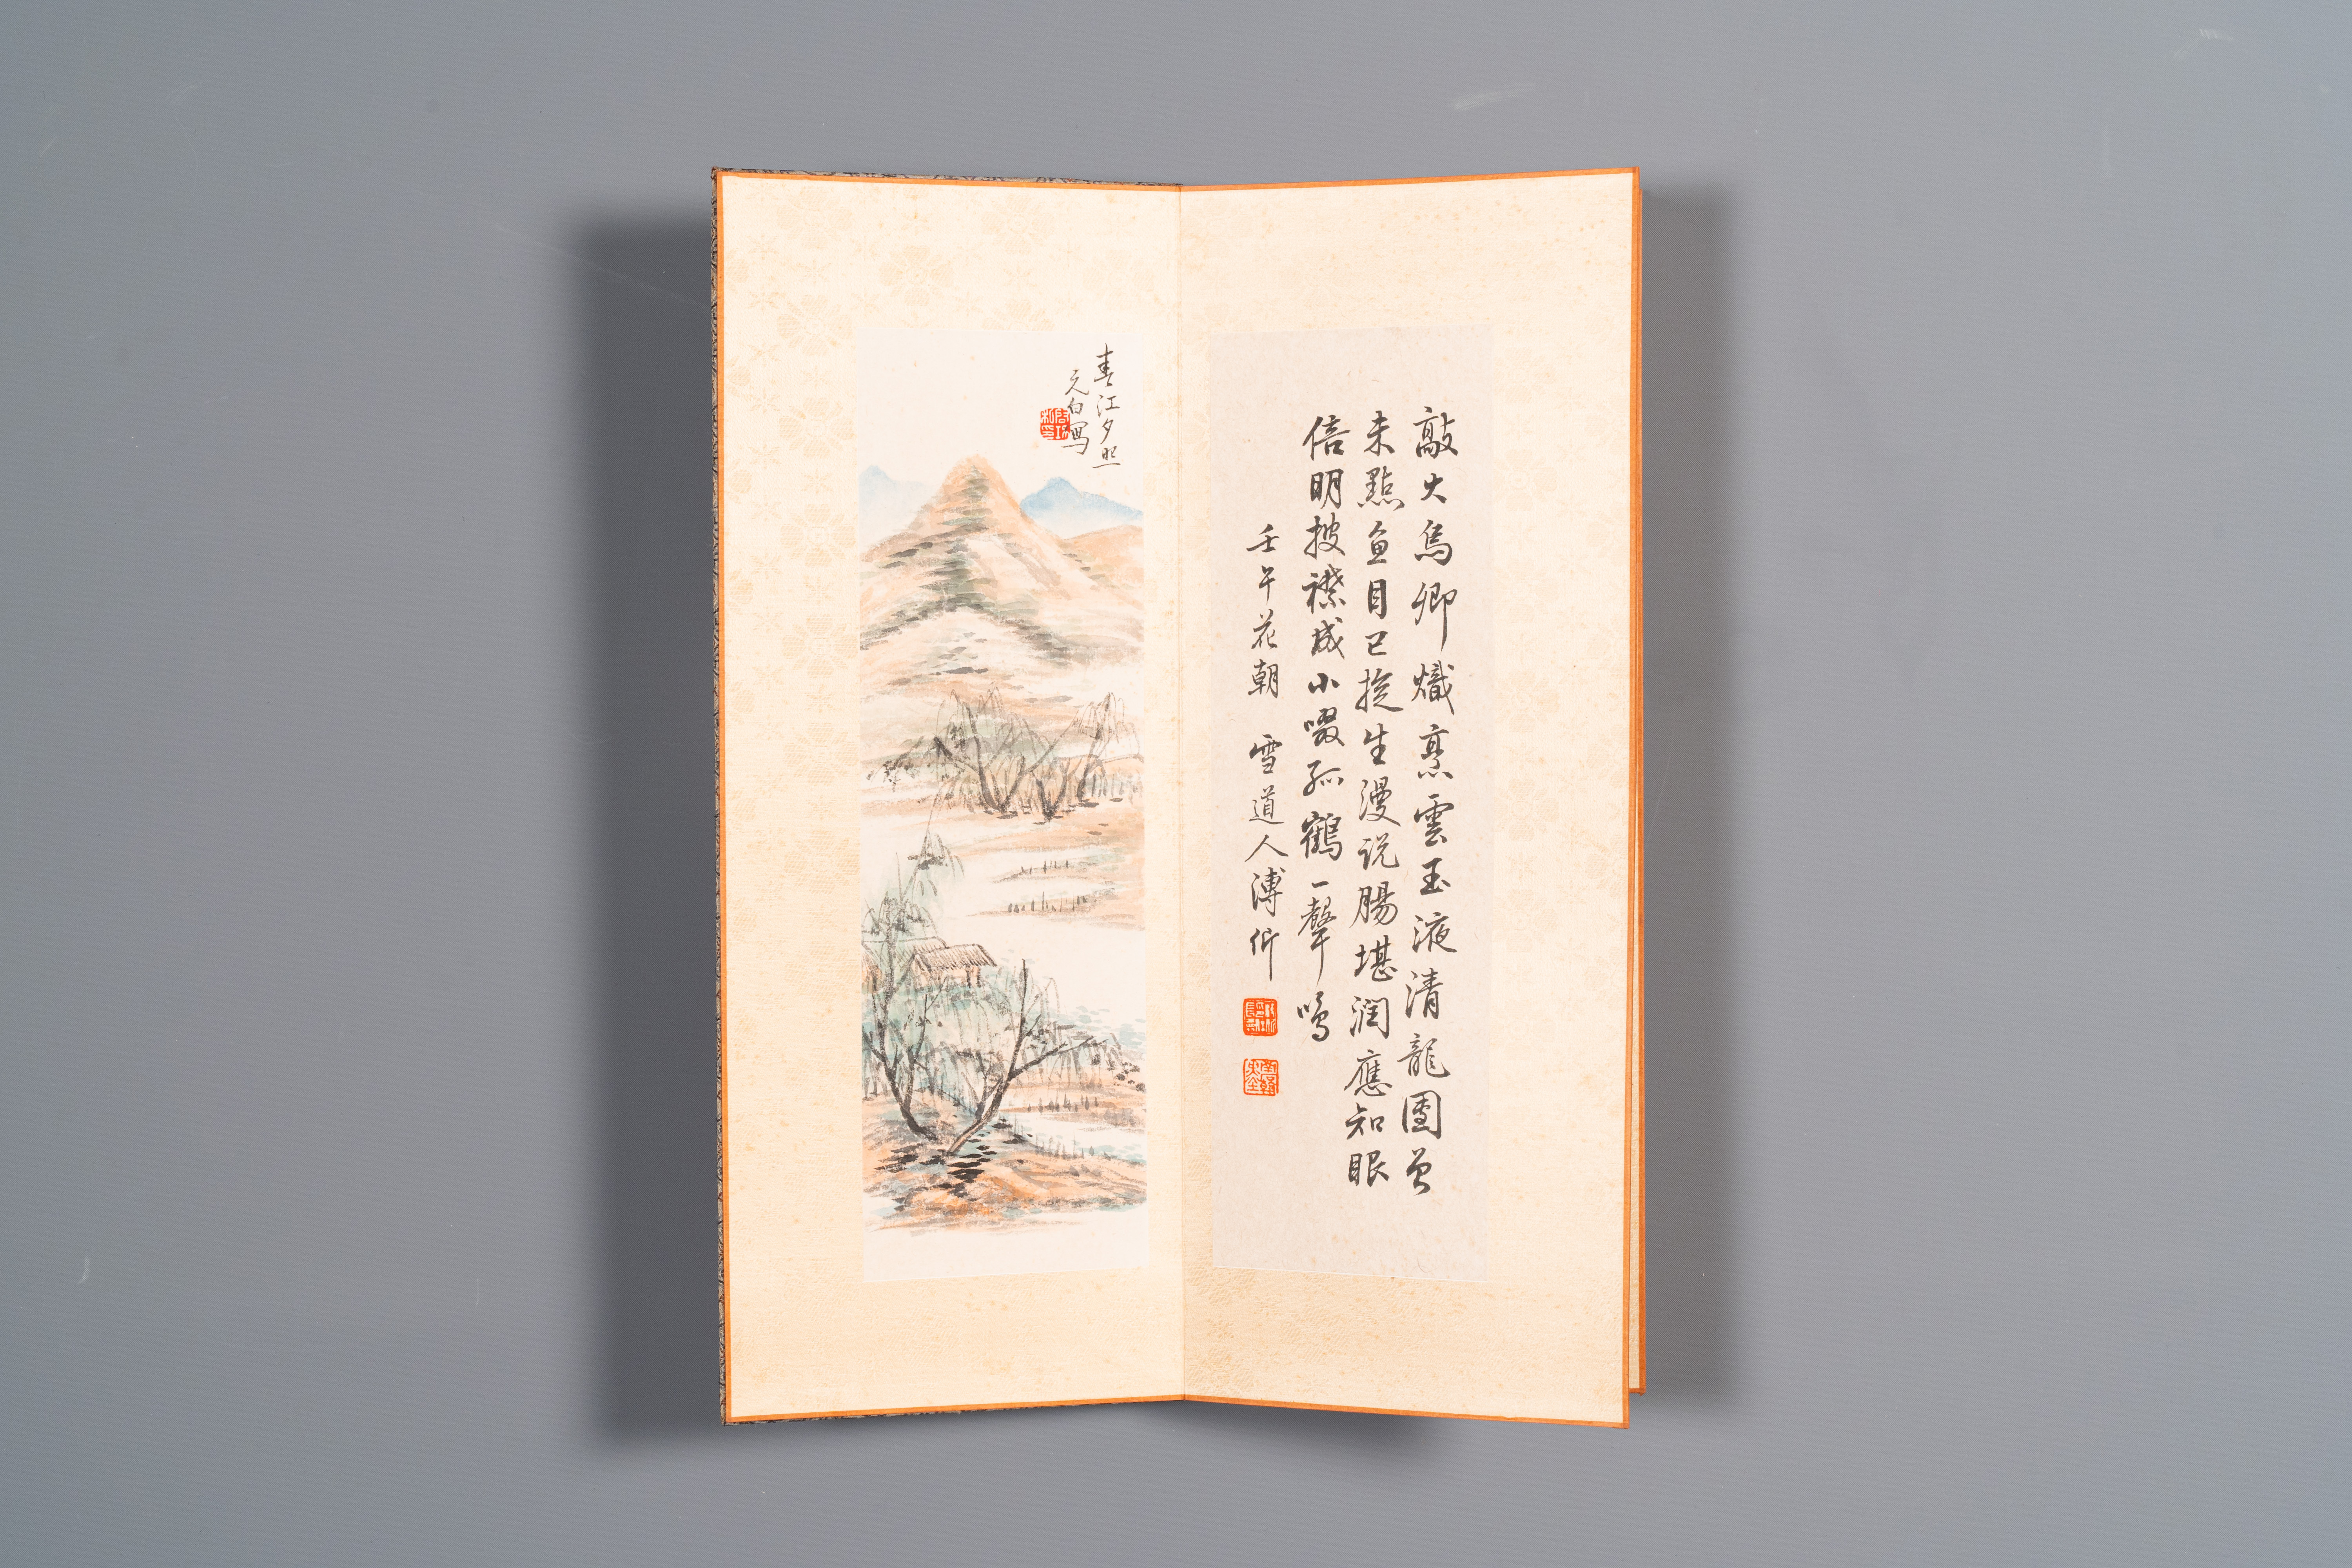 Three albums: 'Jiang Hanting æ±Ÿå¯’æ±€ (1904-1963), Lin Sanzhi æž—æ•£ä¹‹ (1898-1989) and Qi Gong å¯ - Image 23 of 23